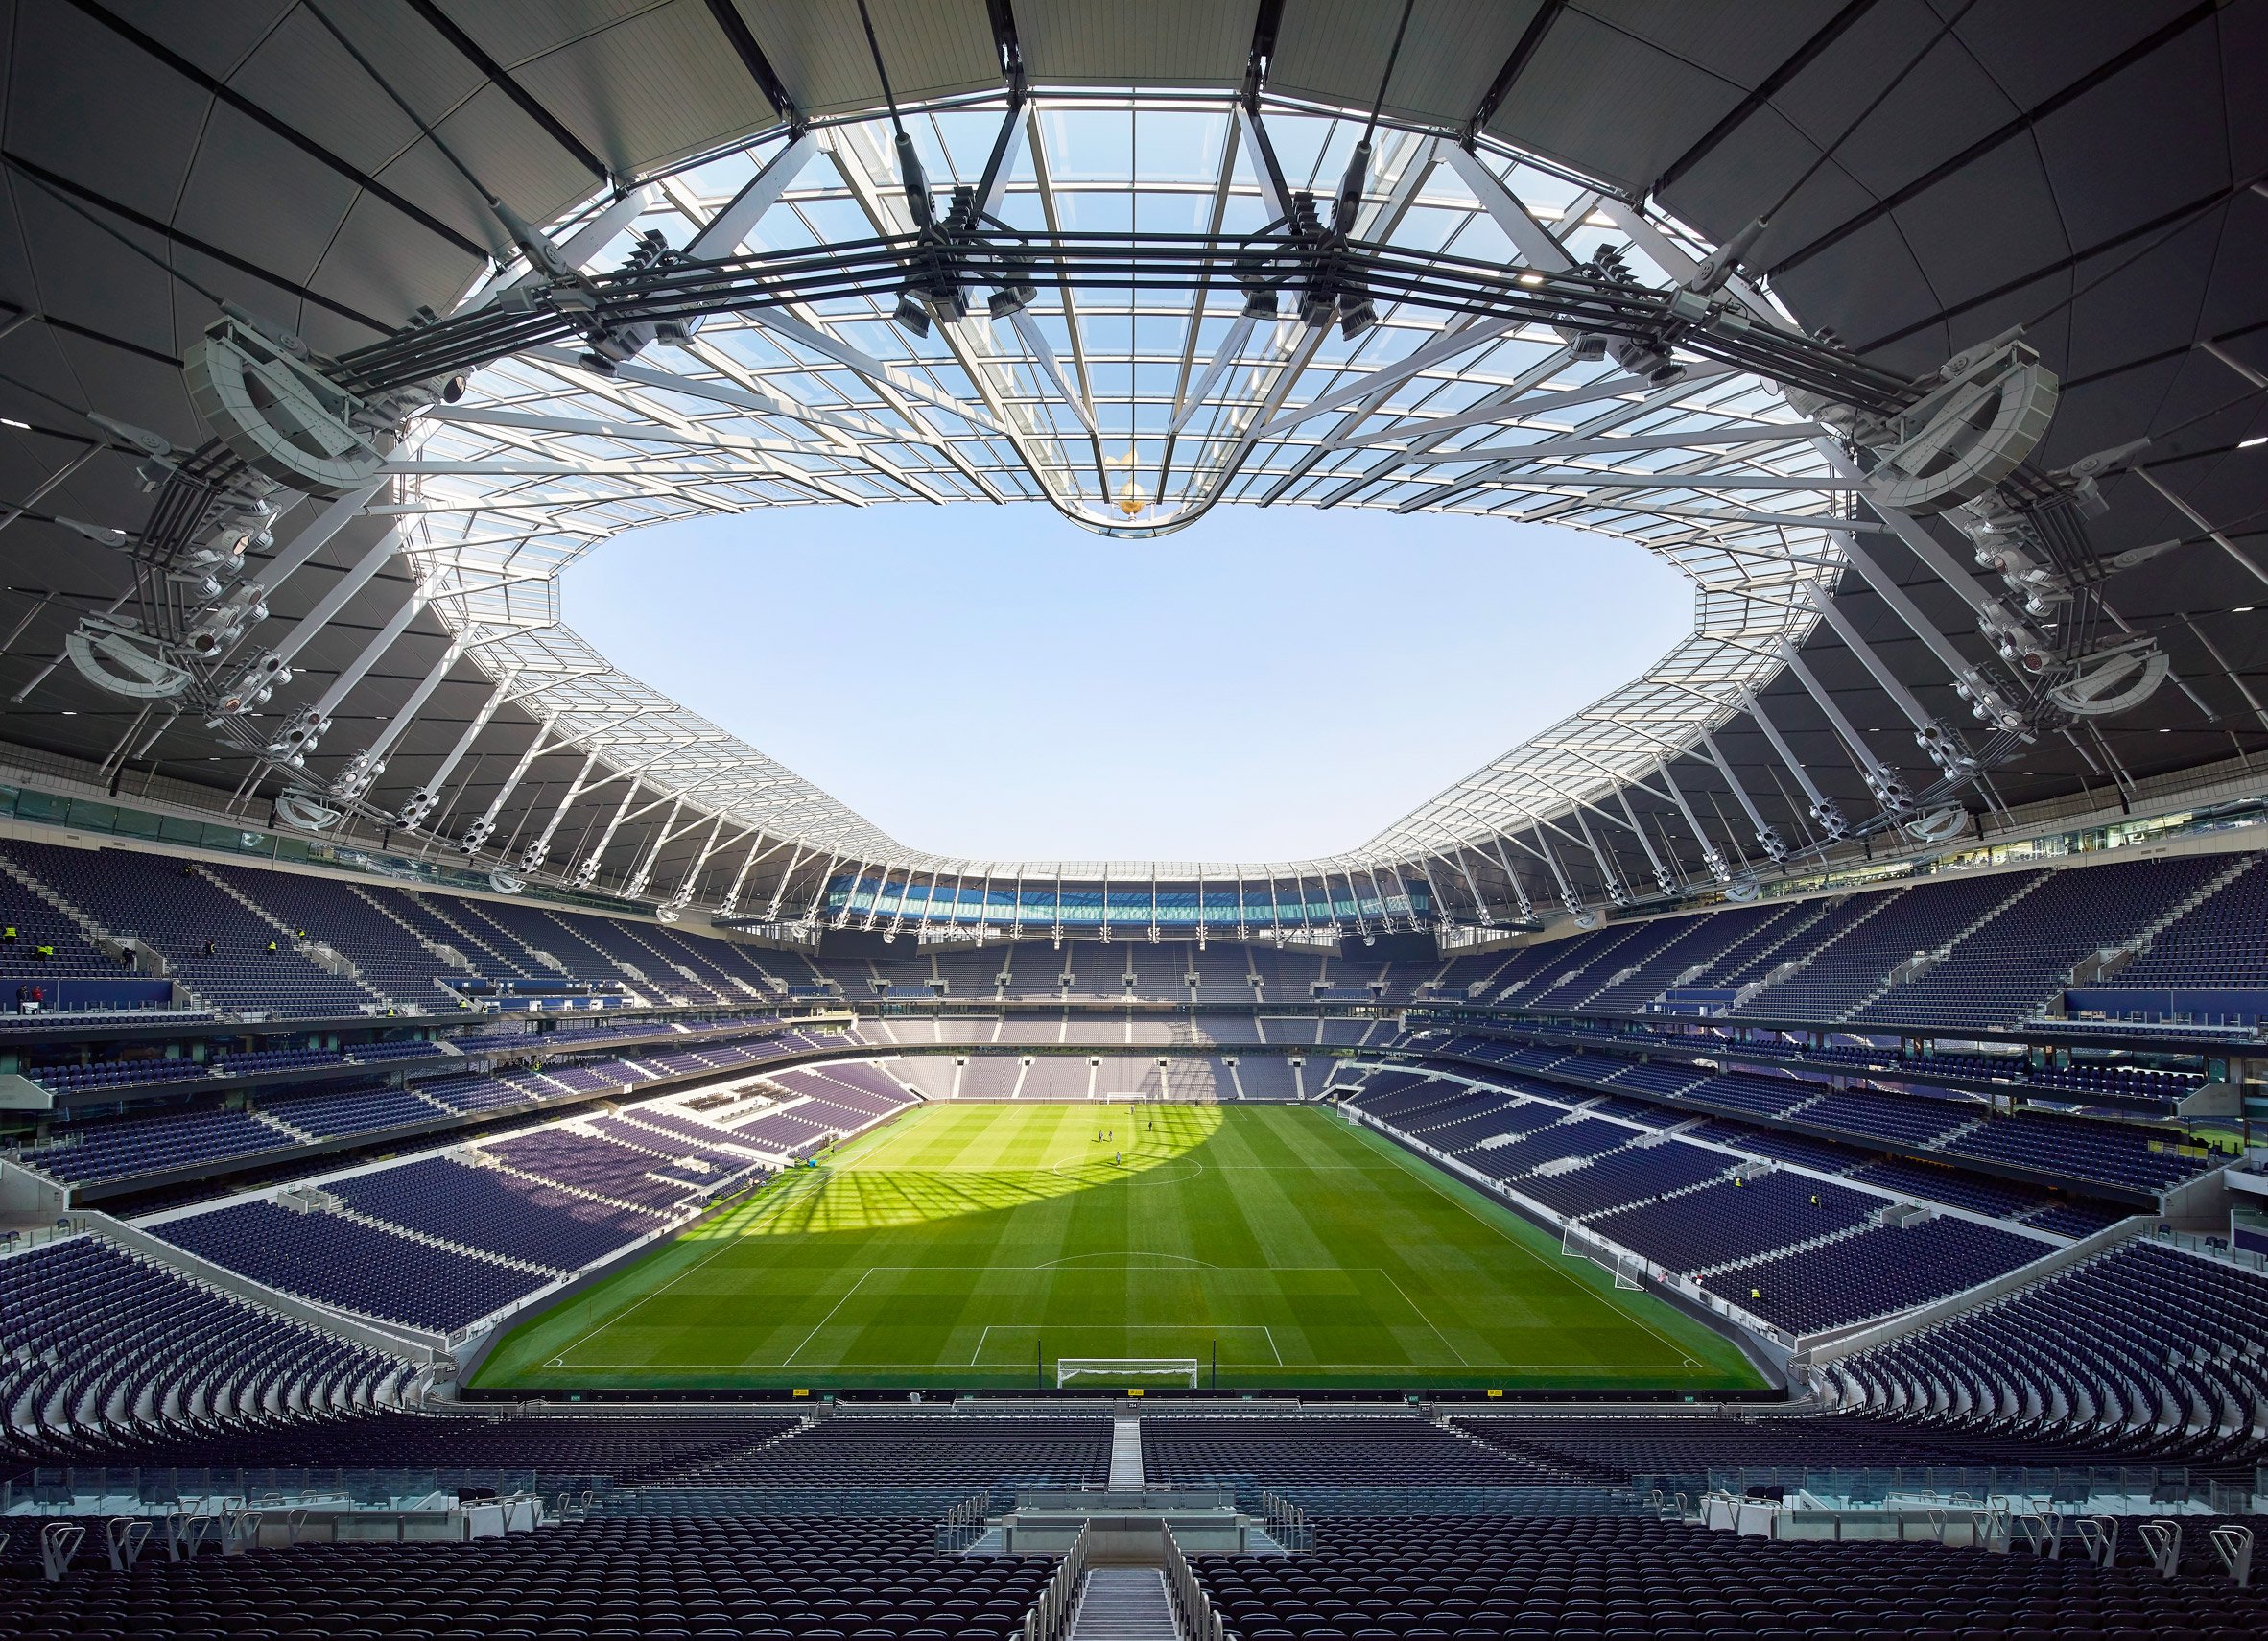 Go Inside the Spectacular Tottenham Hotspur Stadium in London